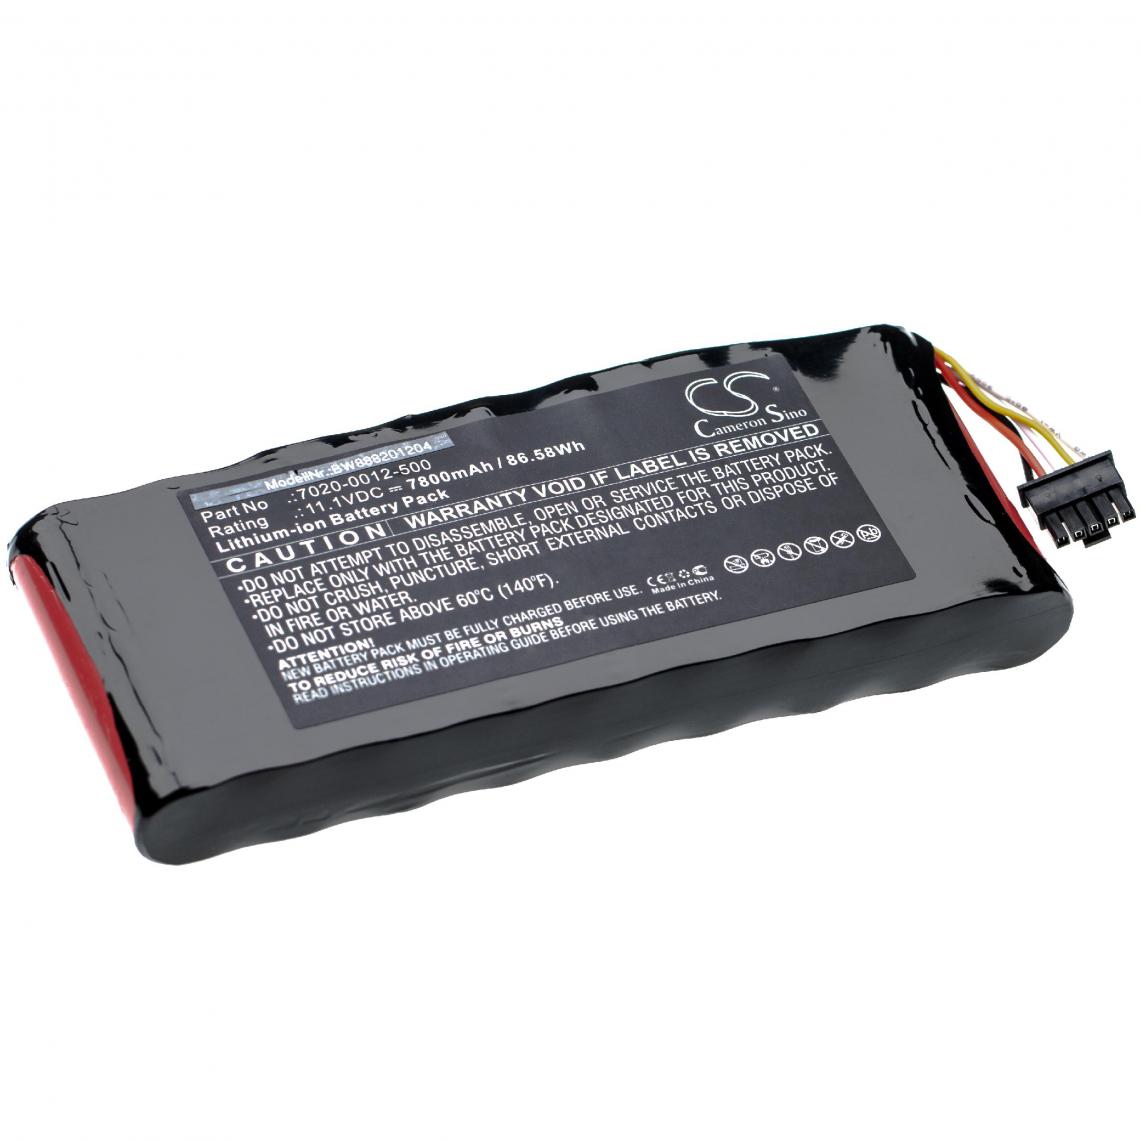 Vhbw - vhbw Batterie remplace Aeroflex 7020-0012-500 pour outil de mesure (7800mAh 11,1V Li-Ion) - Piles rechargeables